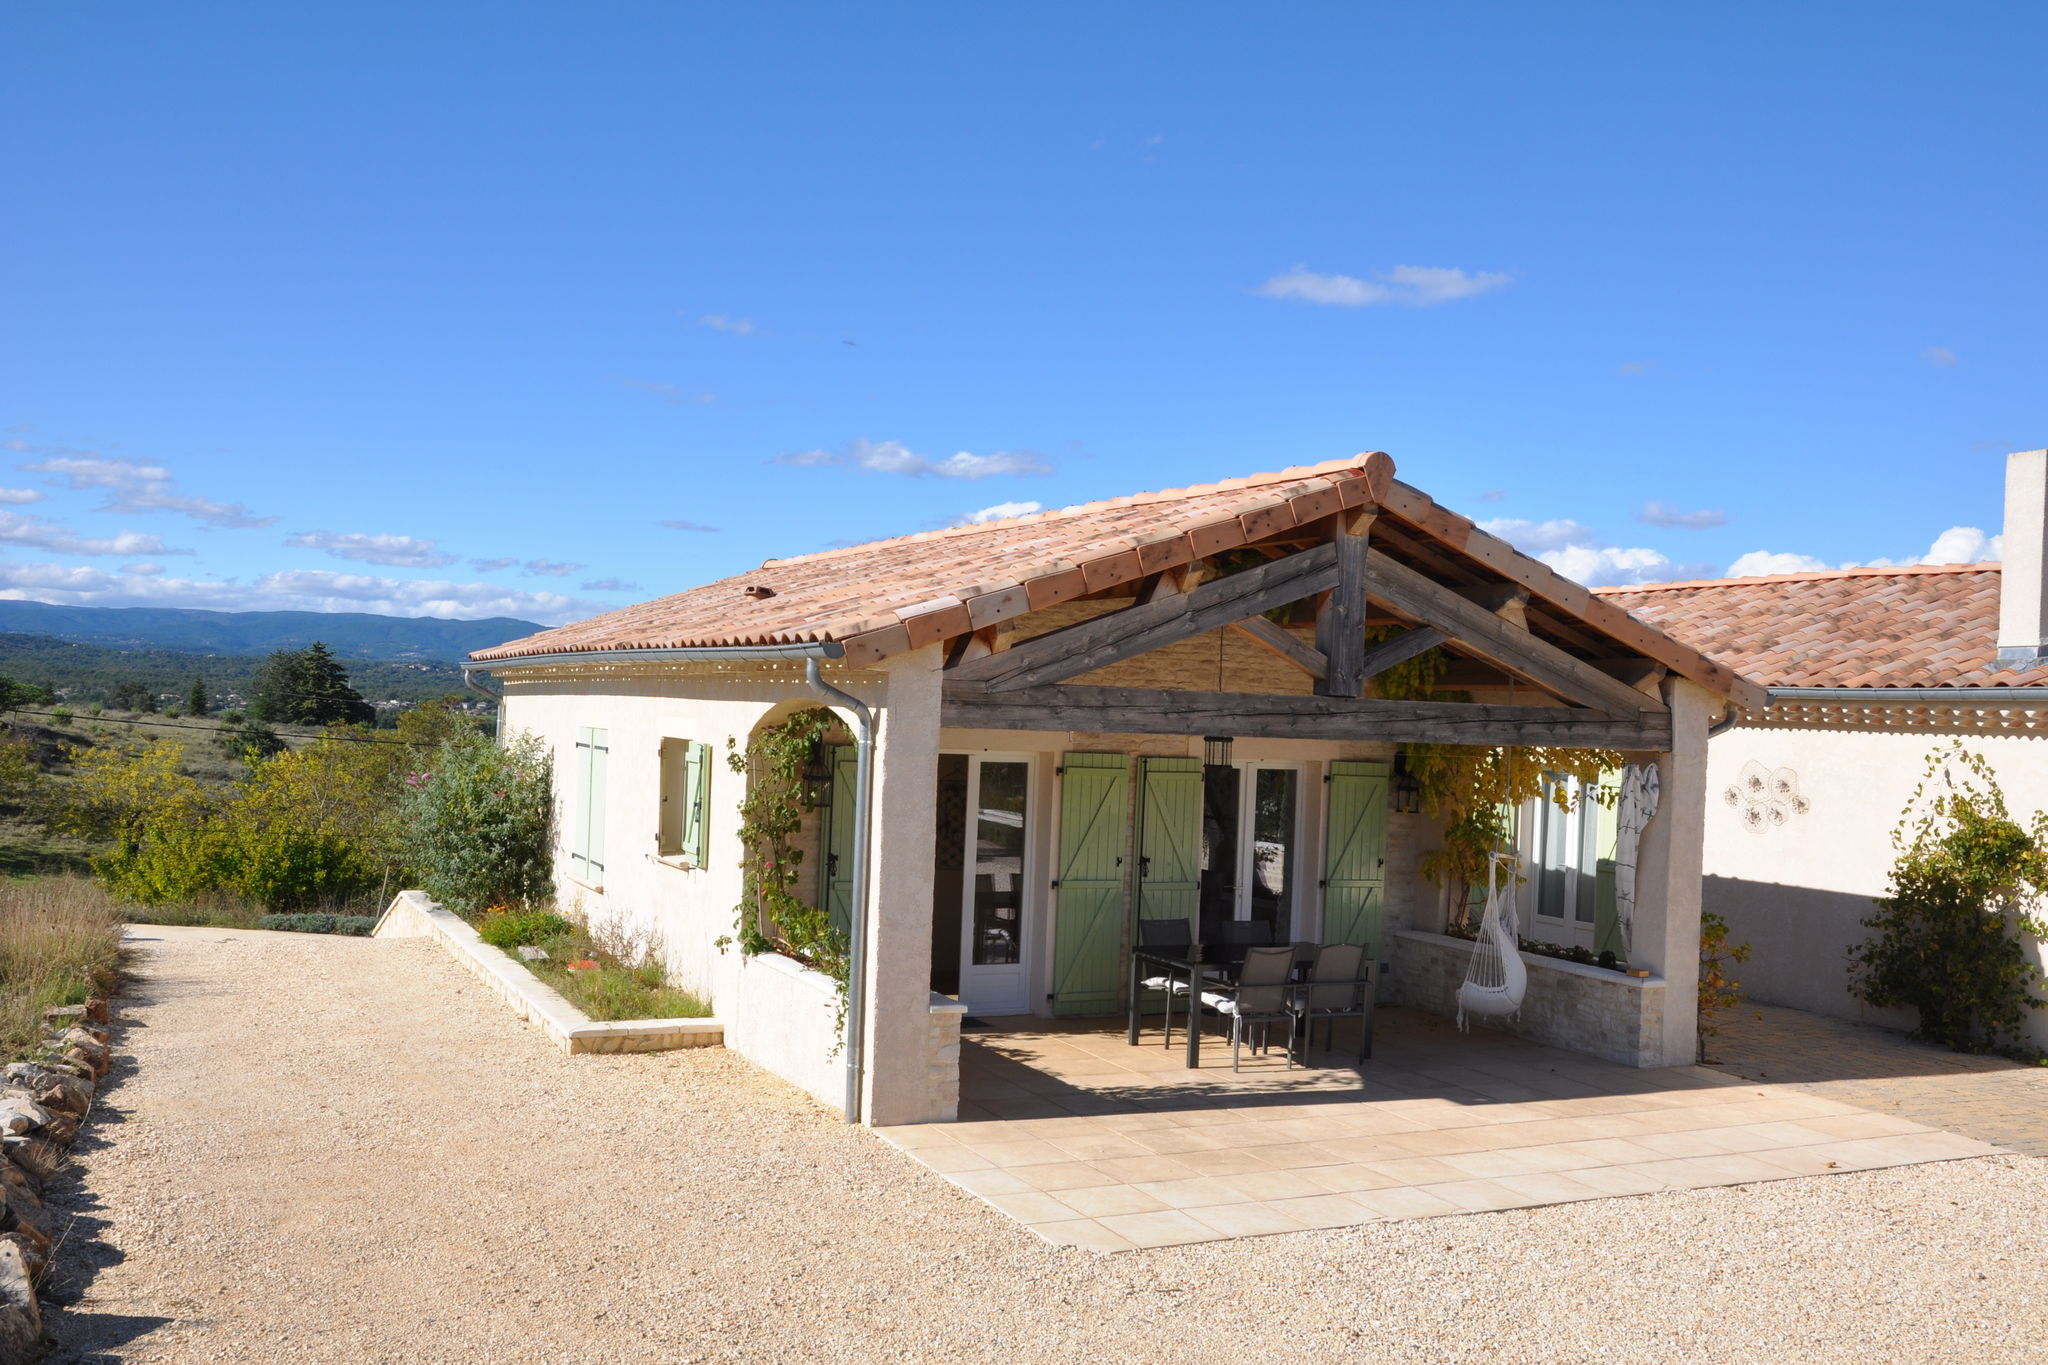 Villa de campagne en Ardèche avec vue imprenable